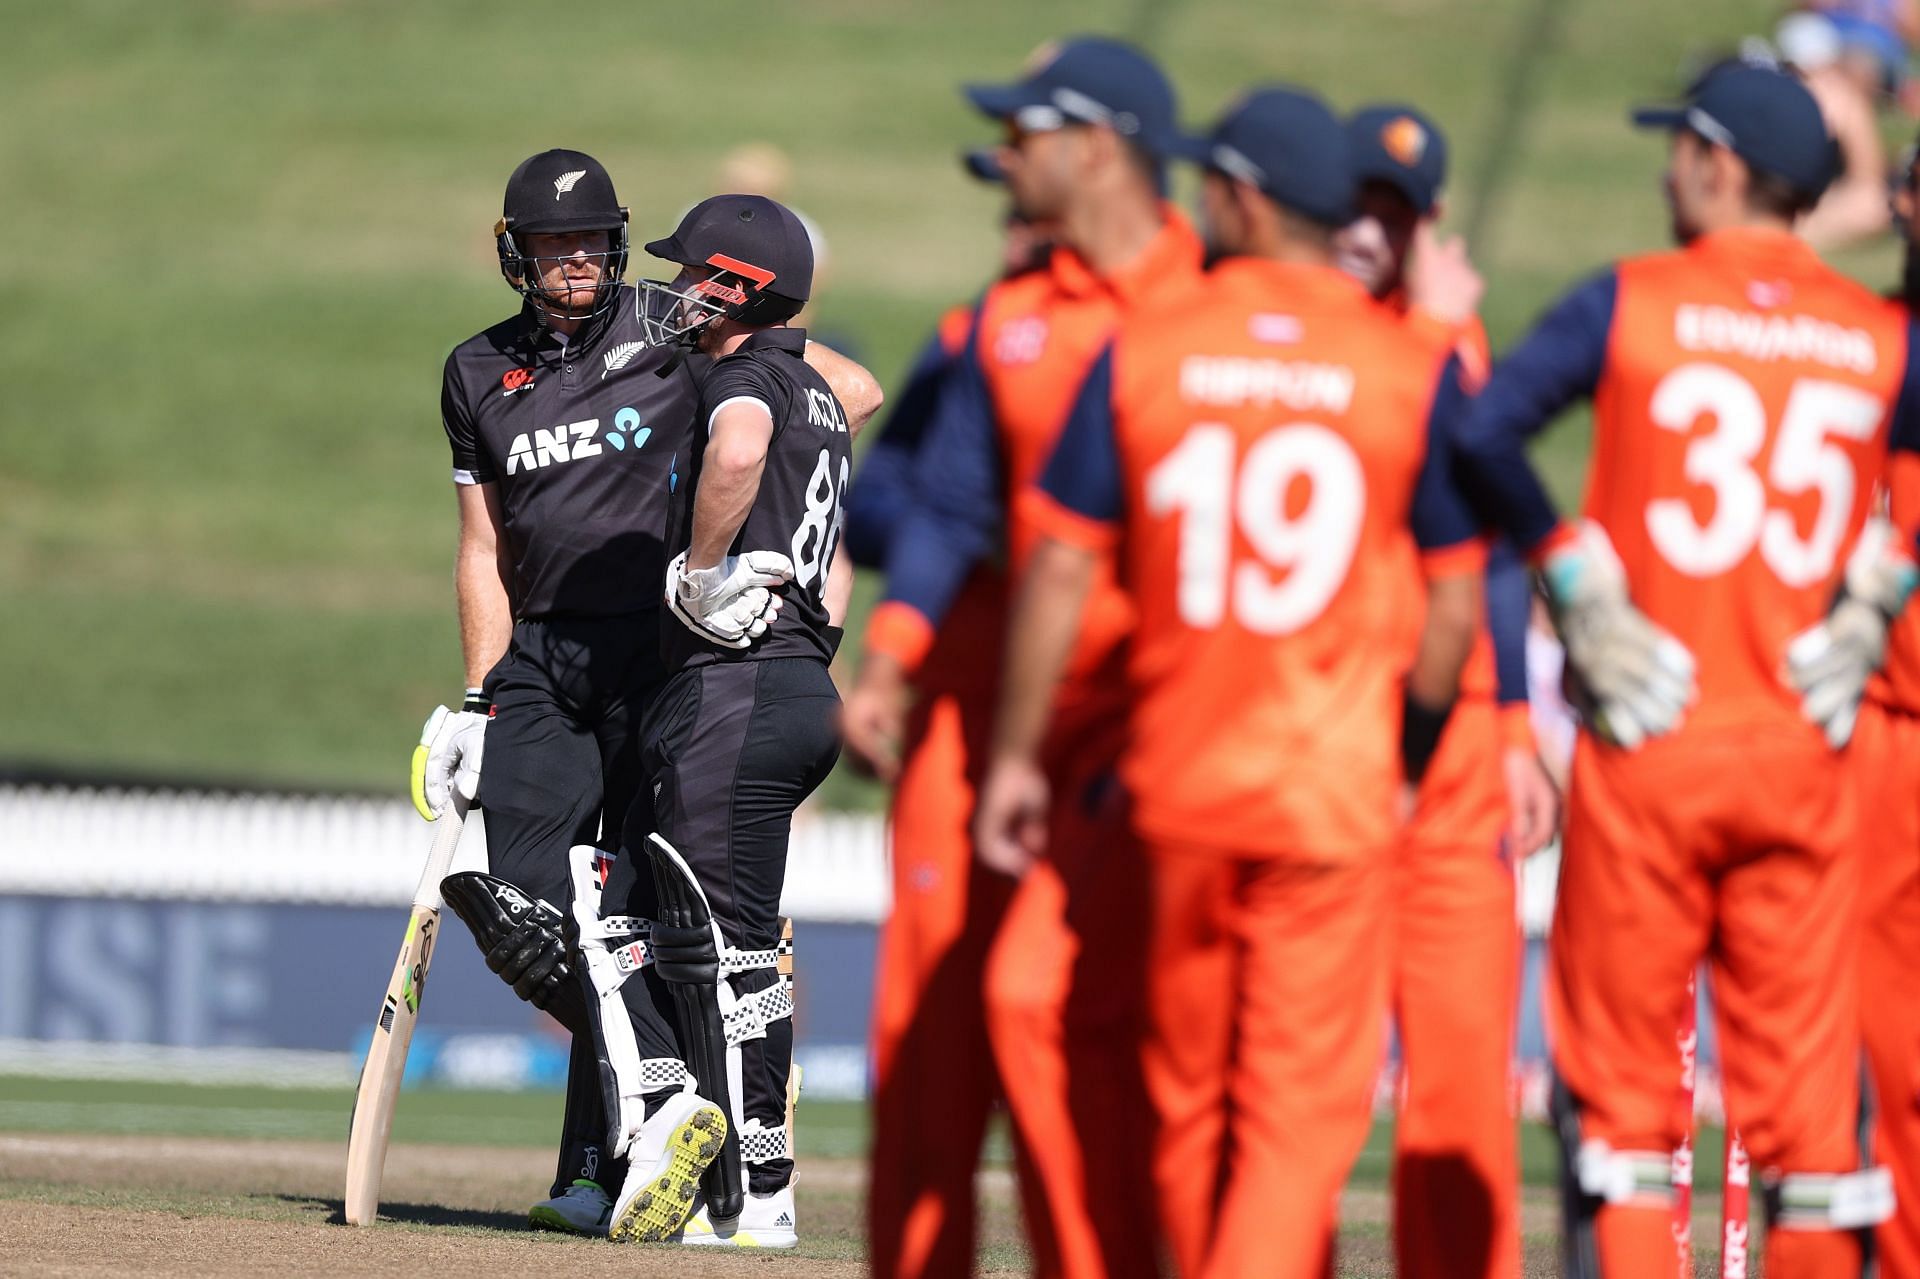 New Zealand vs Netherlands - 3rd ODI